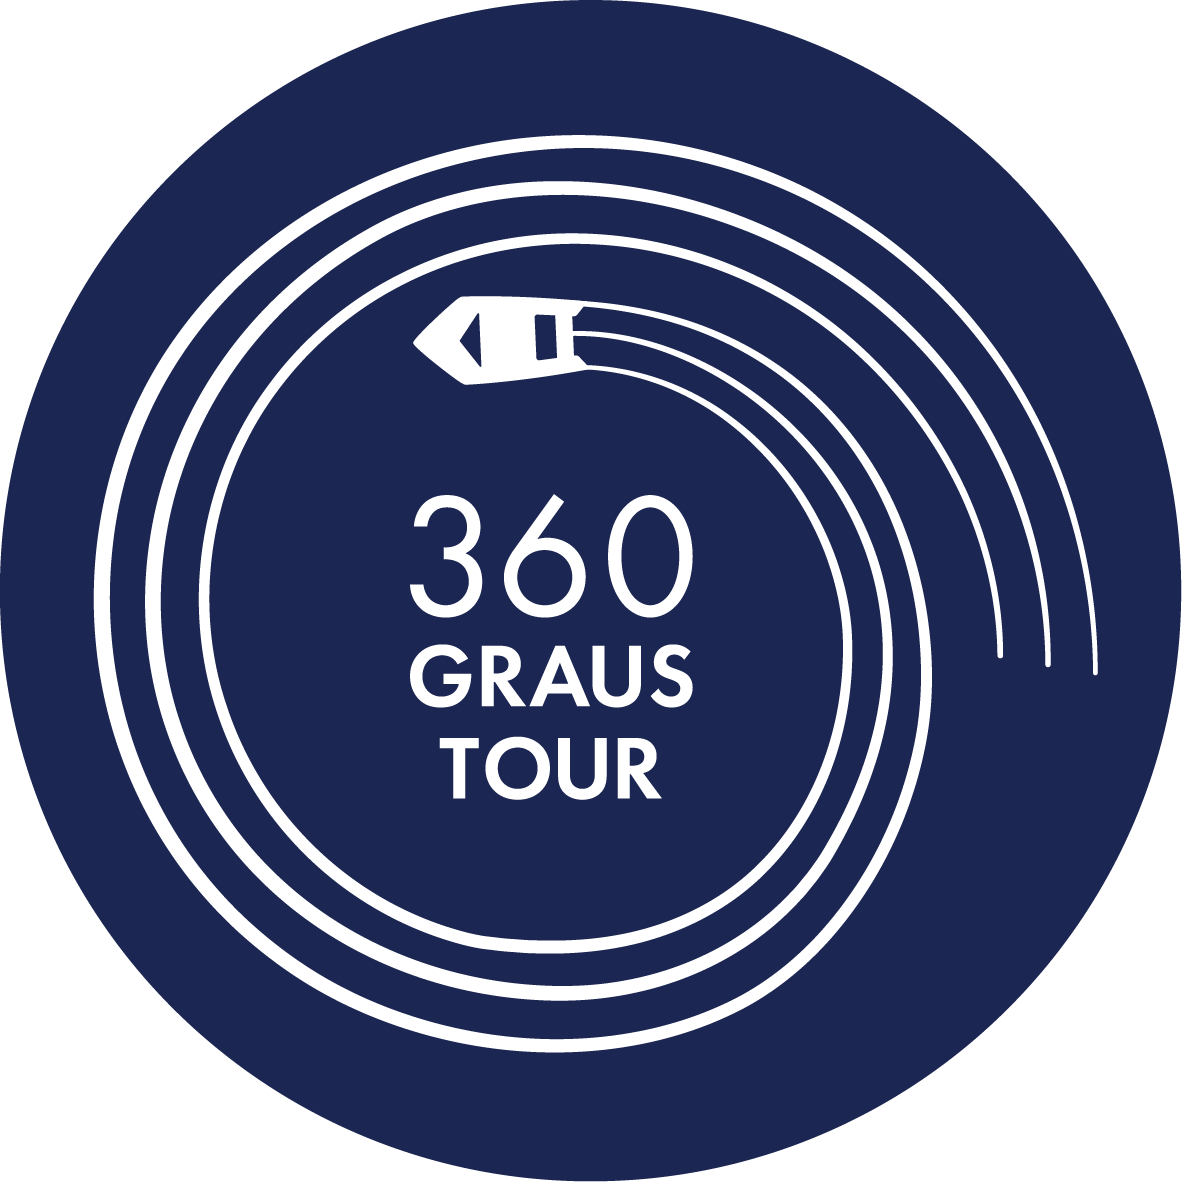 360 Graus Tour